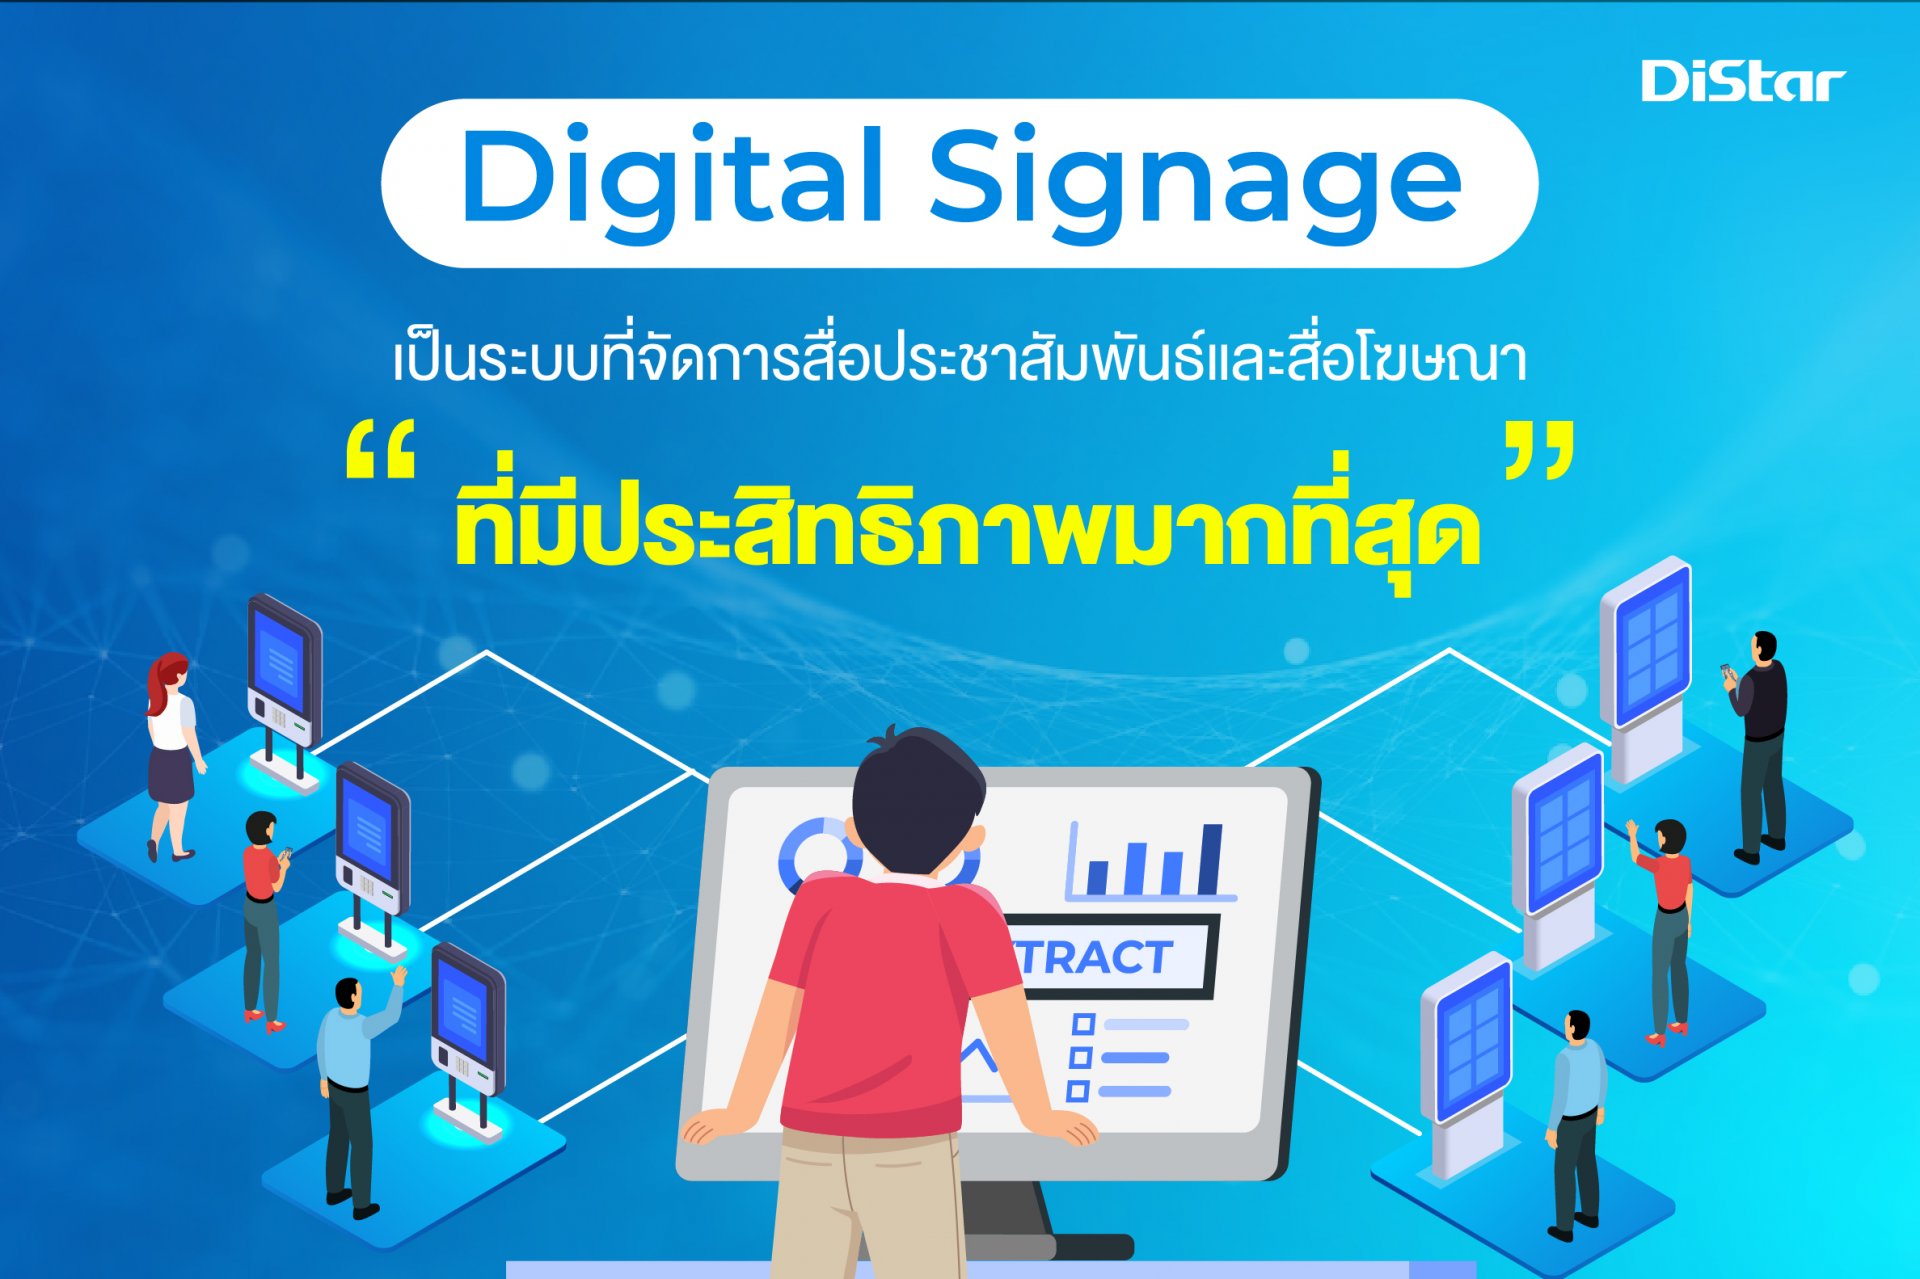 Digital Signage โฆษณา ประชาสัมพันธ์ ในรูปแบบป้ายดิจิตอล